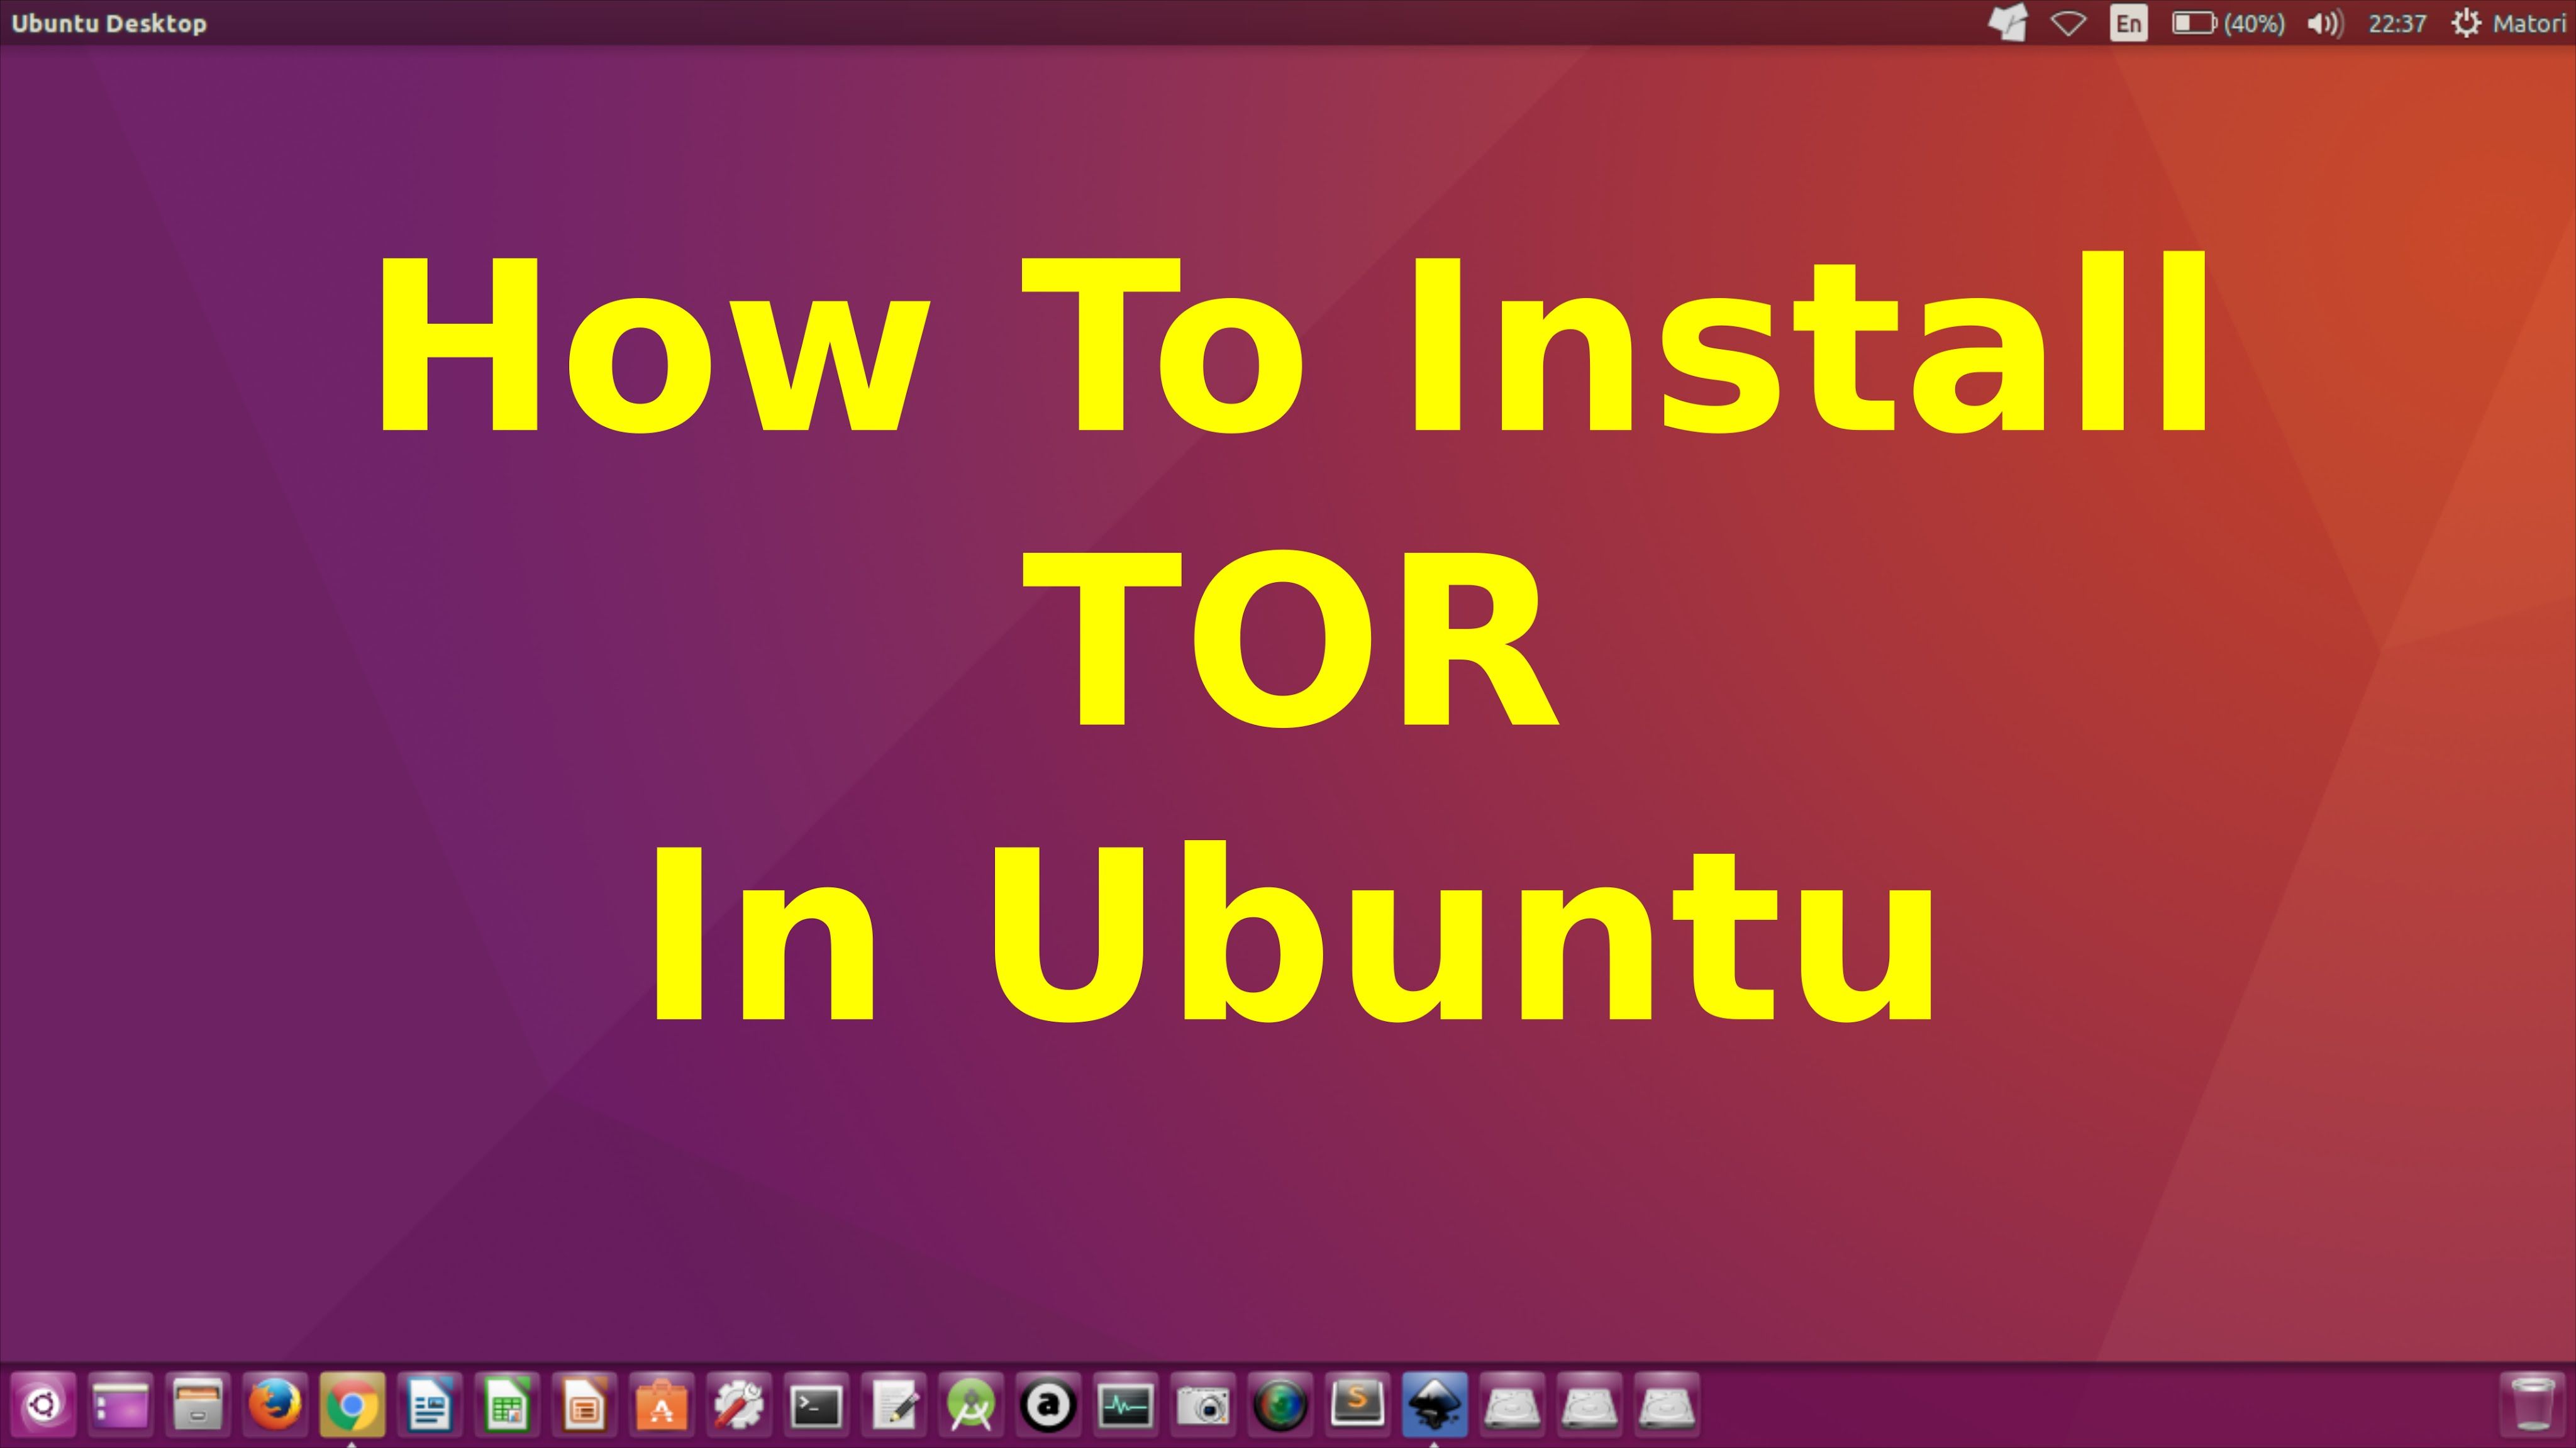 How to install maltego on ubuntu